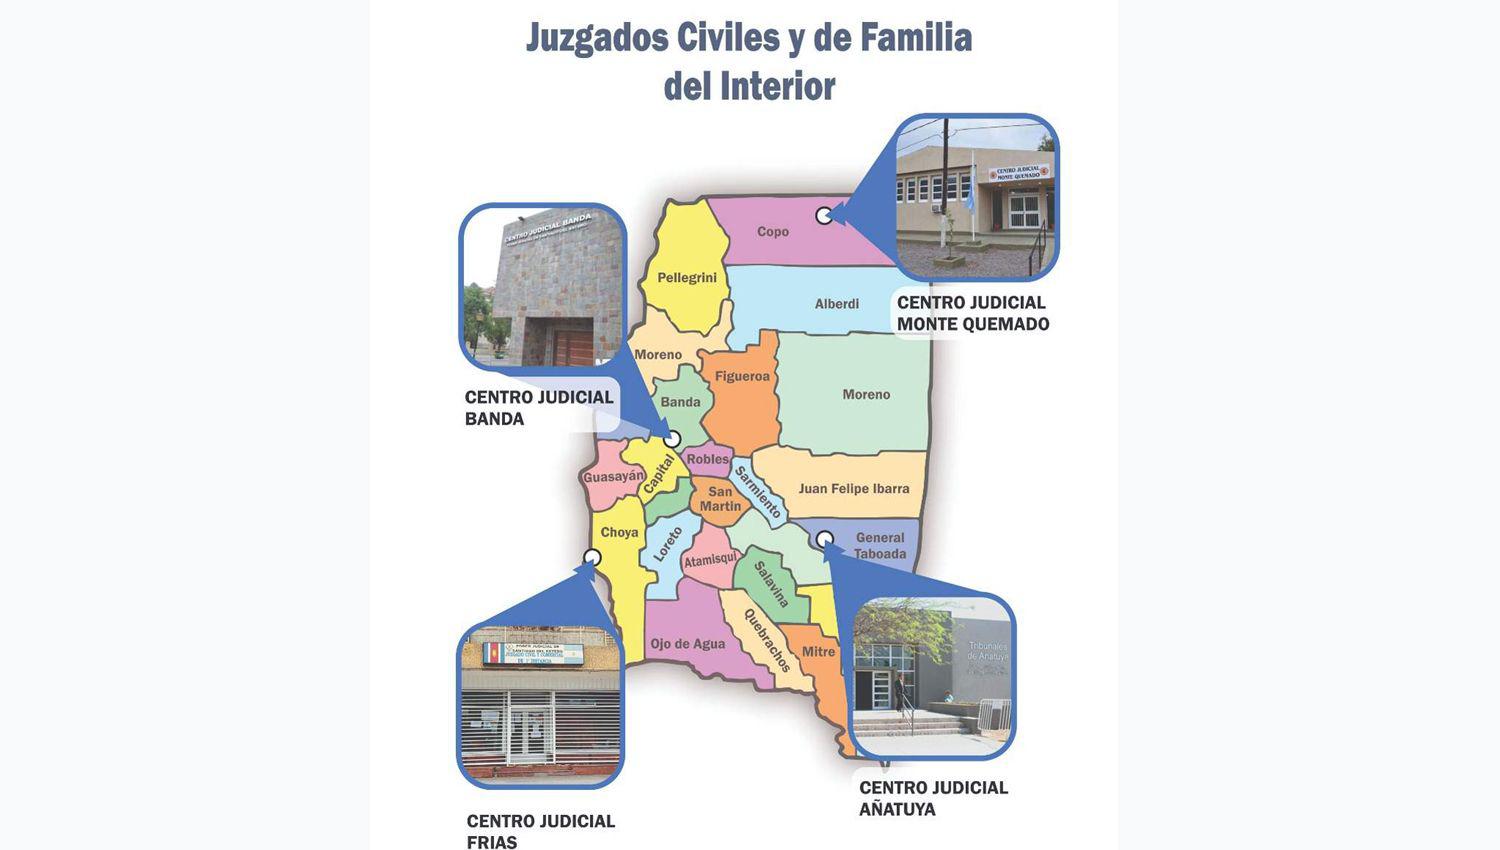 Destacado servicio de los centros judiciales del interior provincial en asuntos de familia